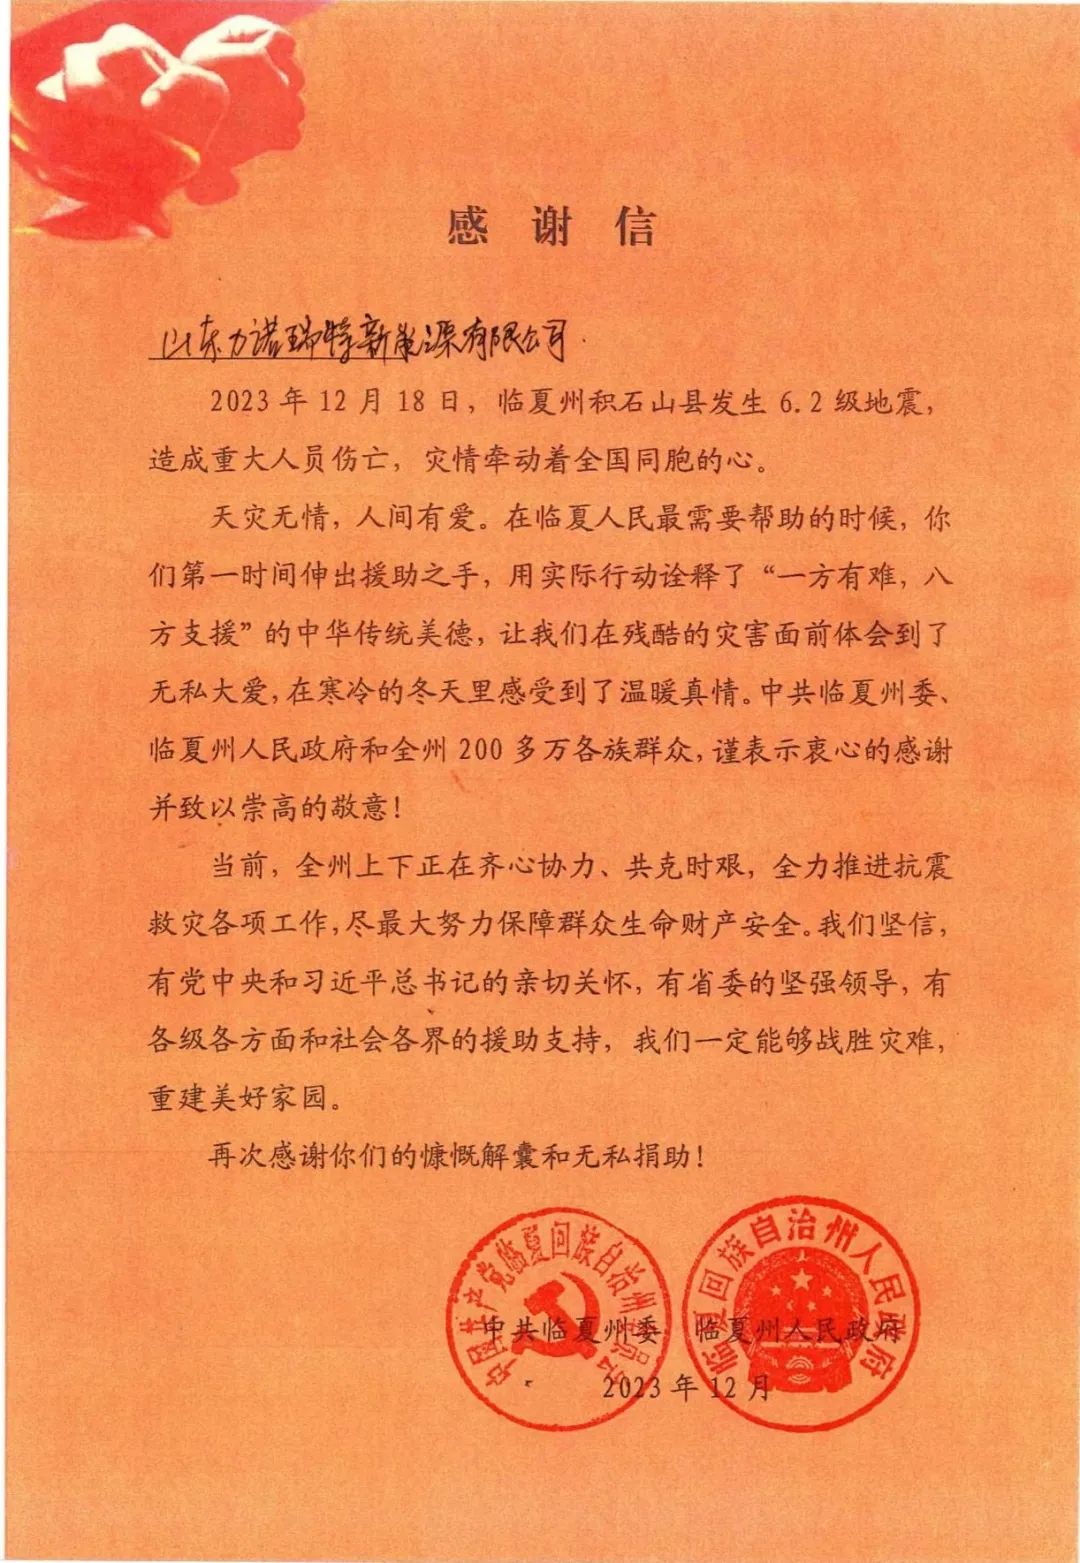 一封来自甘肃省临夏州的感谢信